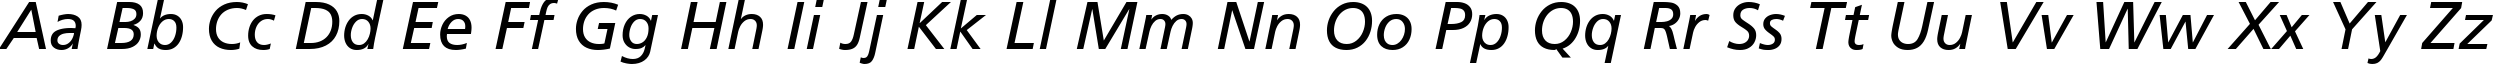 Пример написания английского алфавита шрифтом AG Foreigner Italic Medium